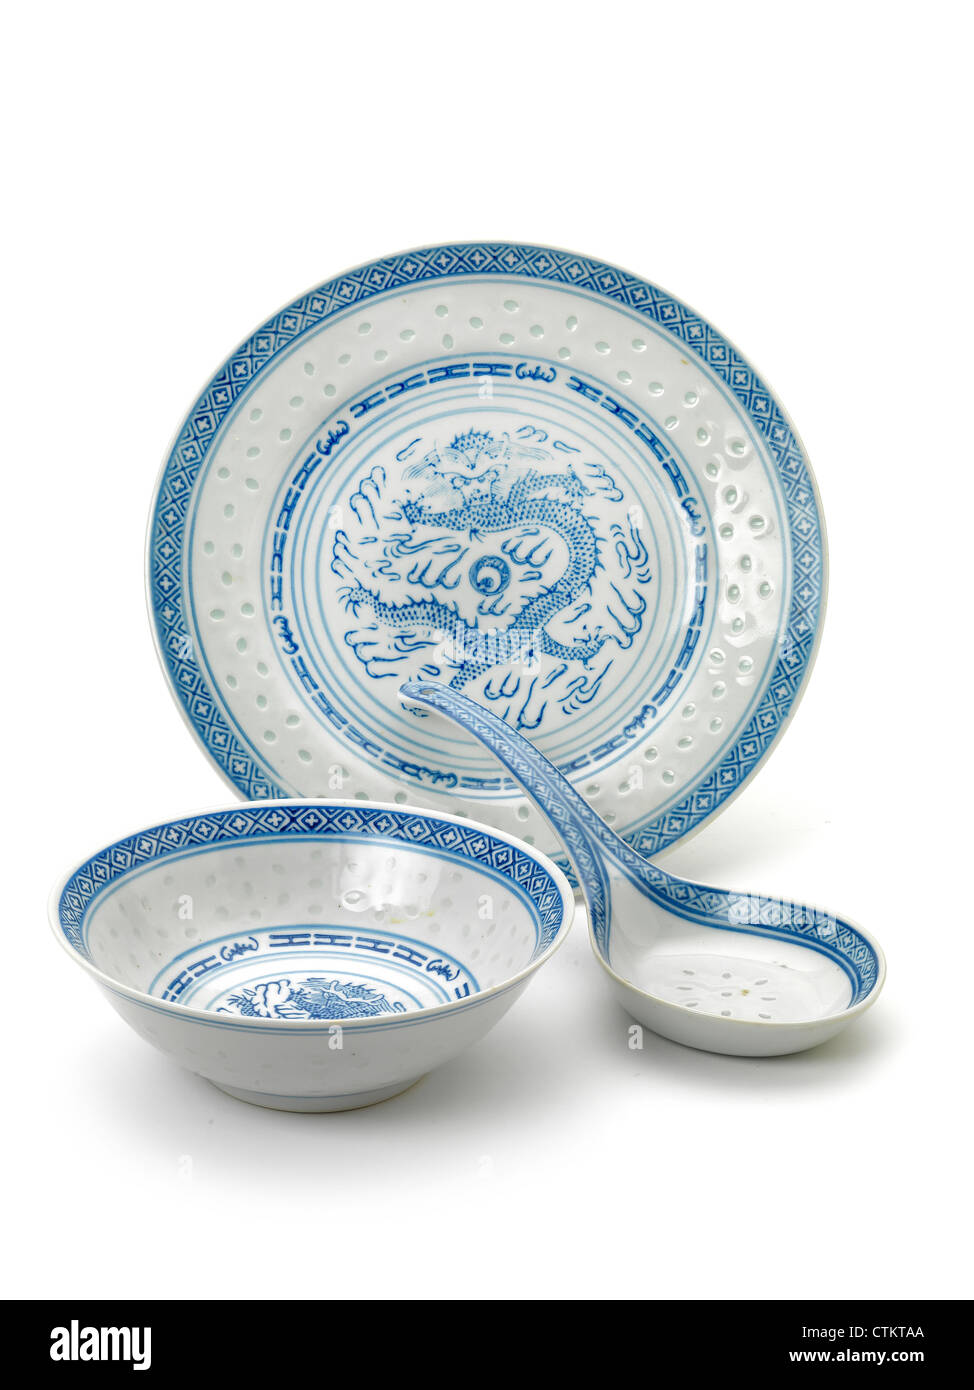 Service de table en porcelaine chinoise Photo Stock - Alamy